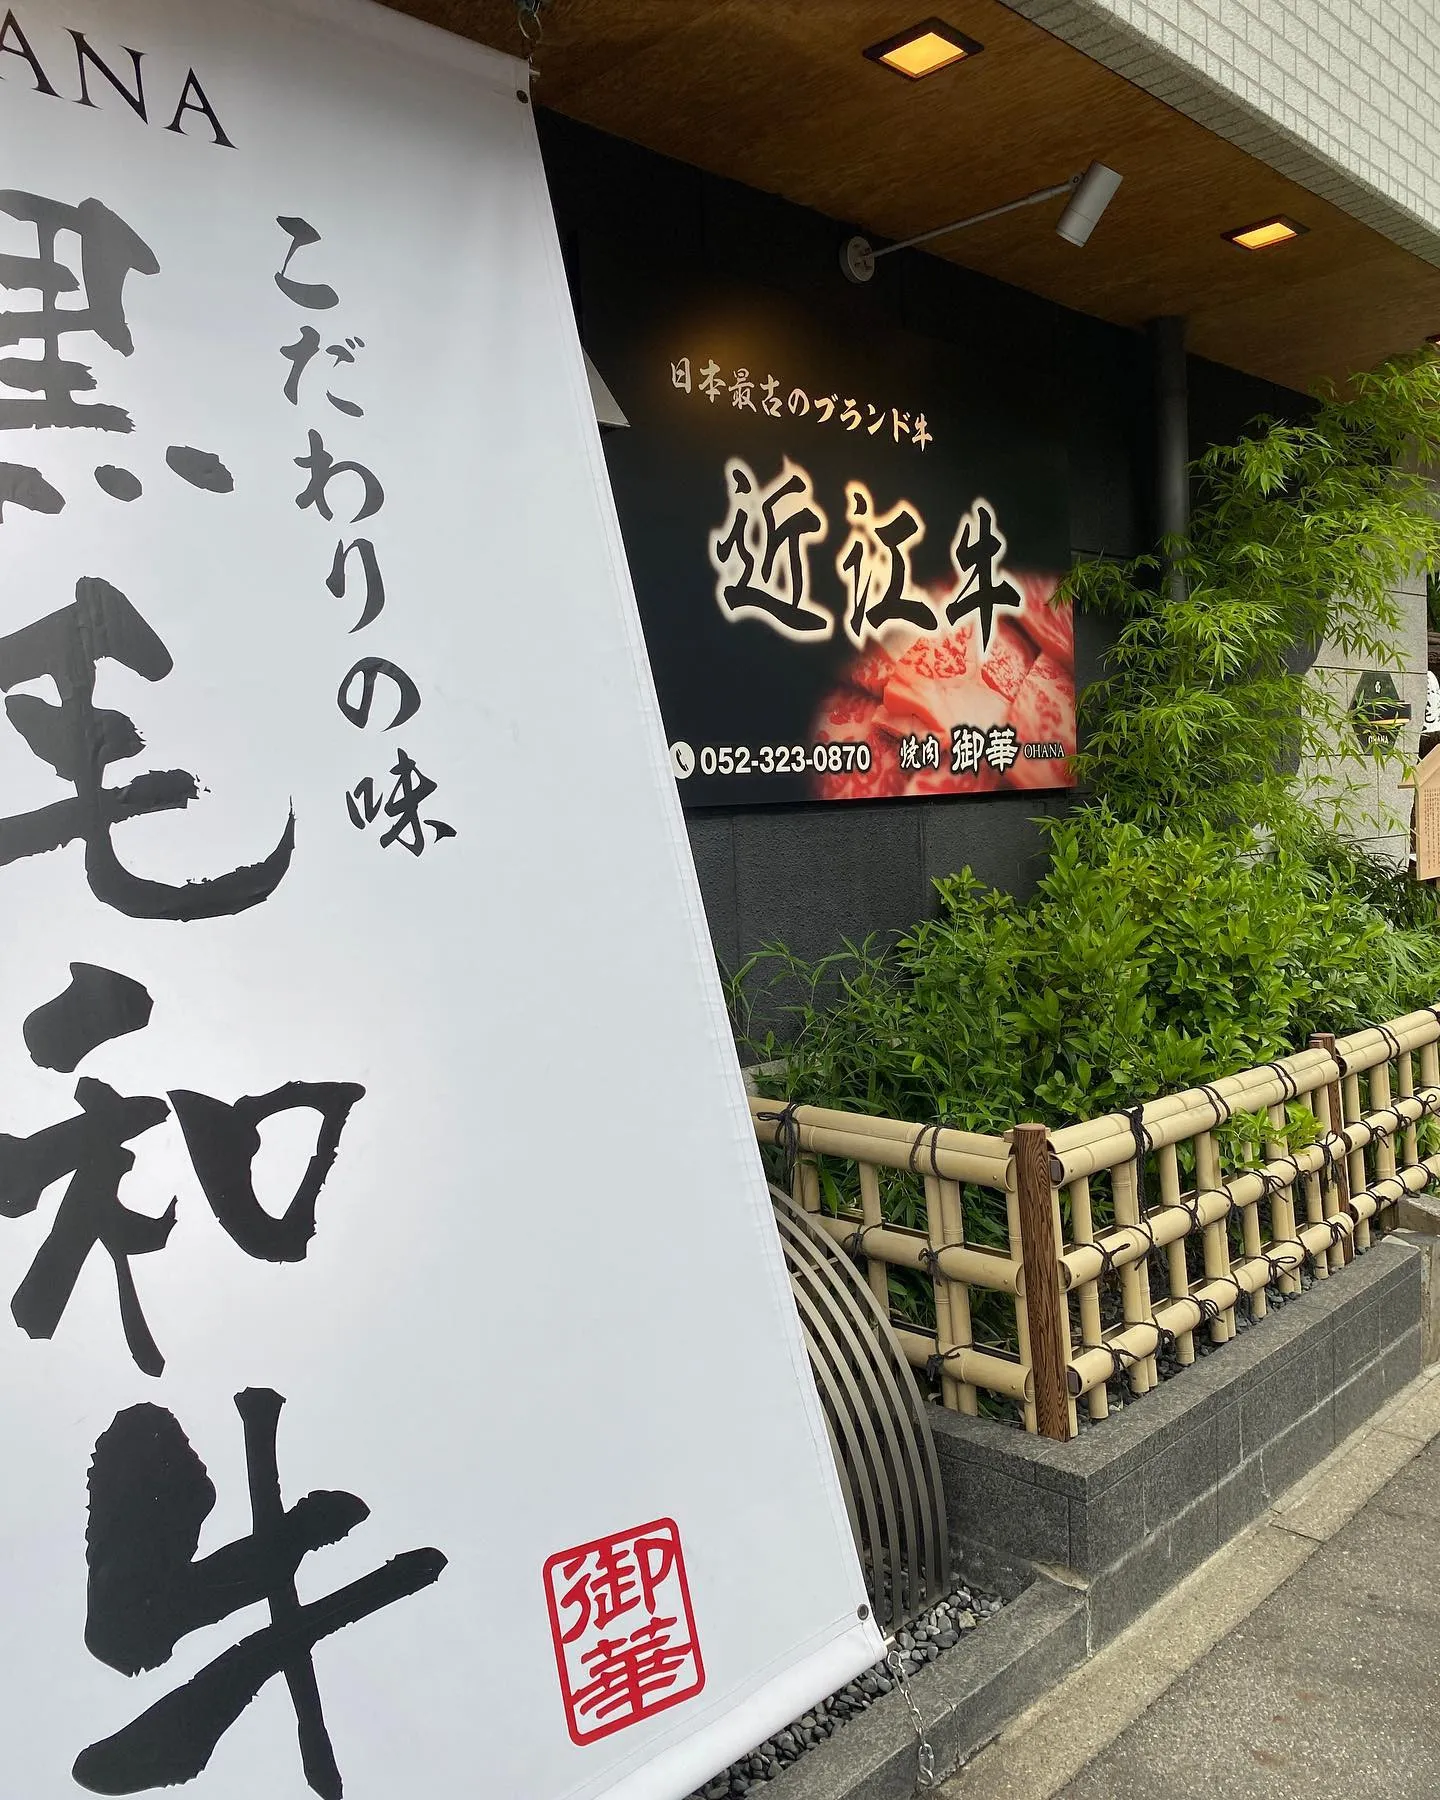 名古屋市で美味しい焼肉店をお探しなら